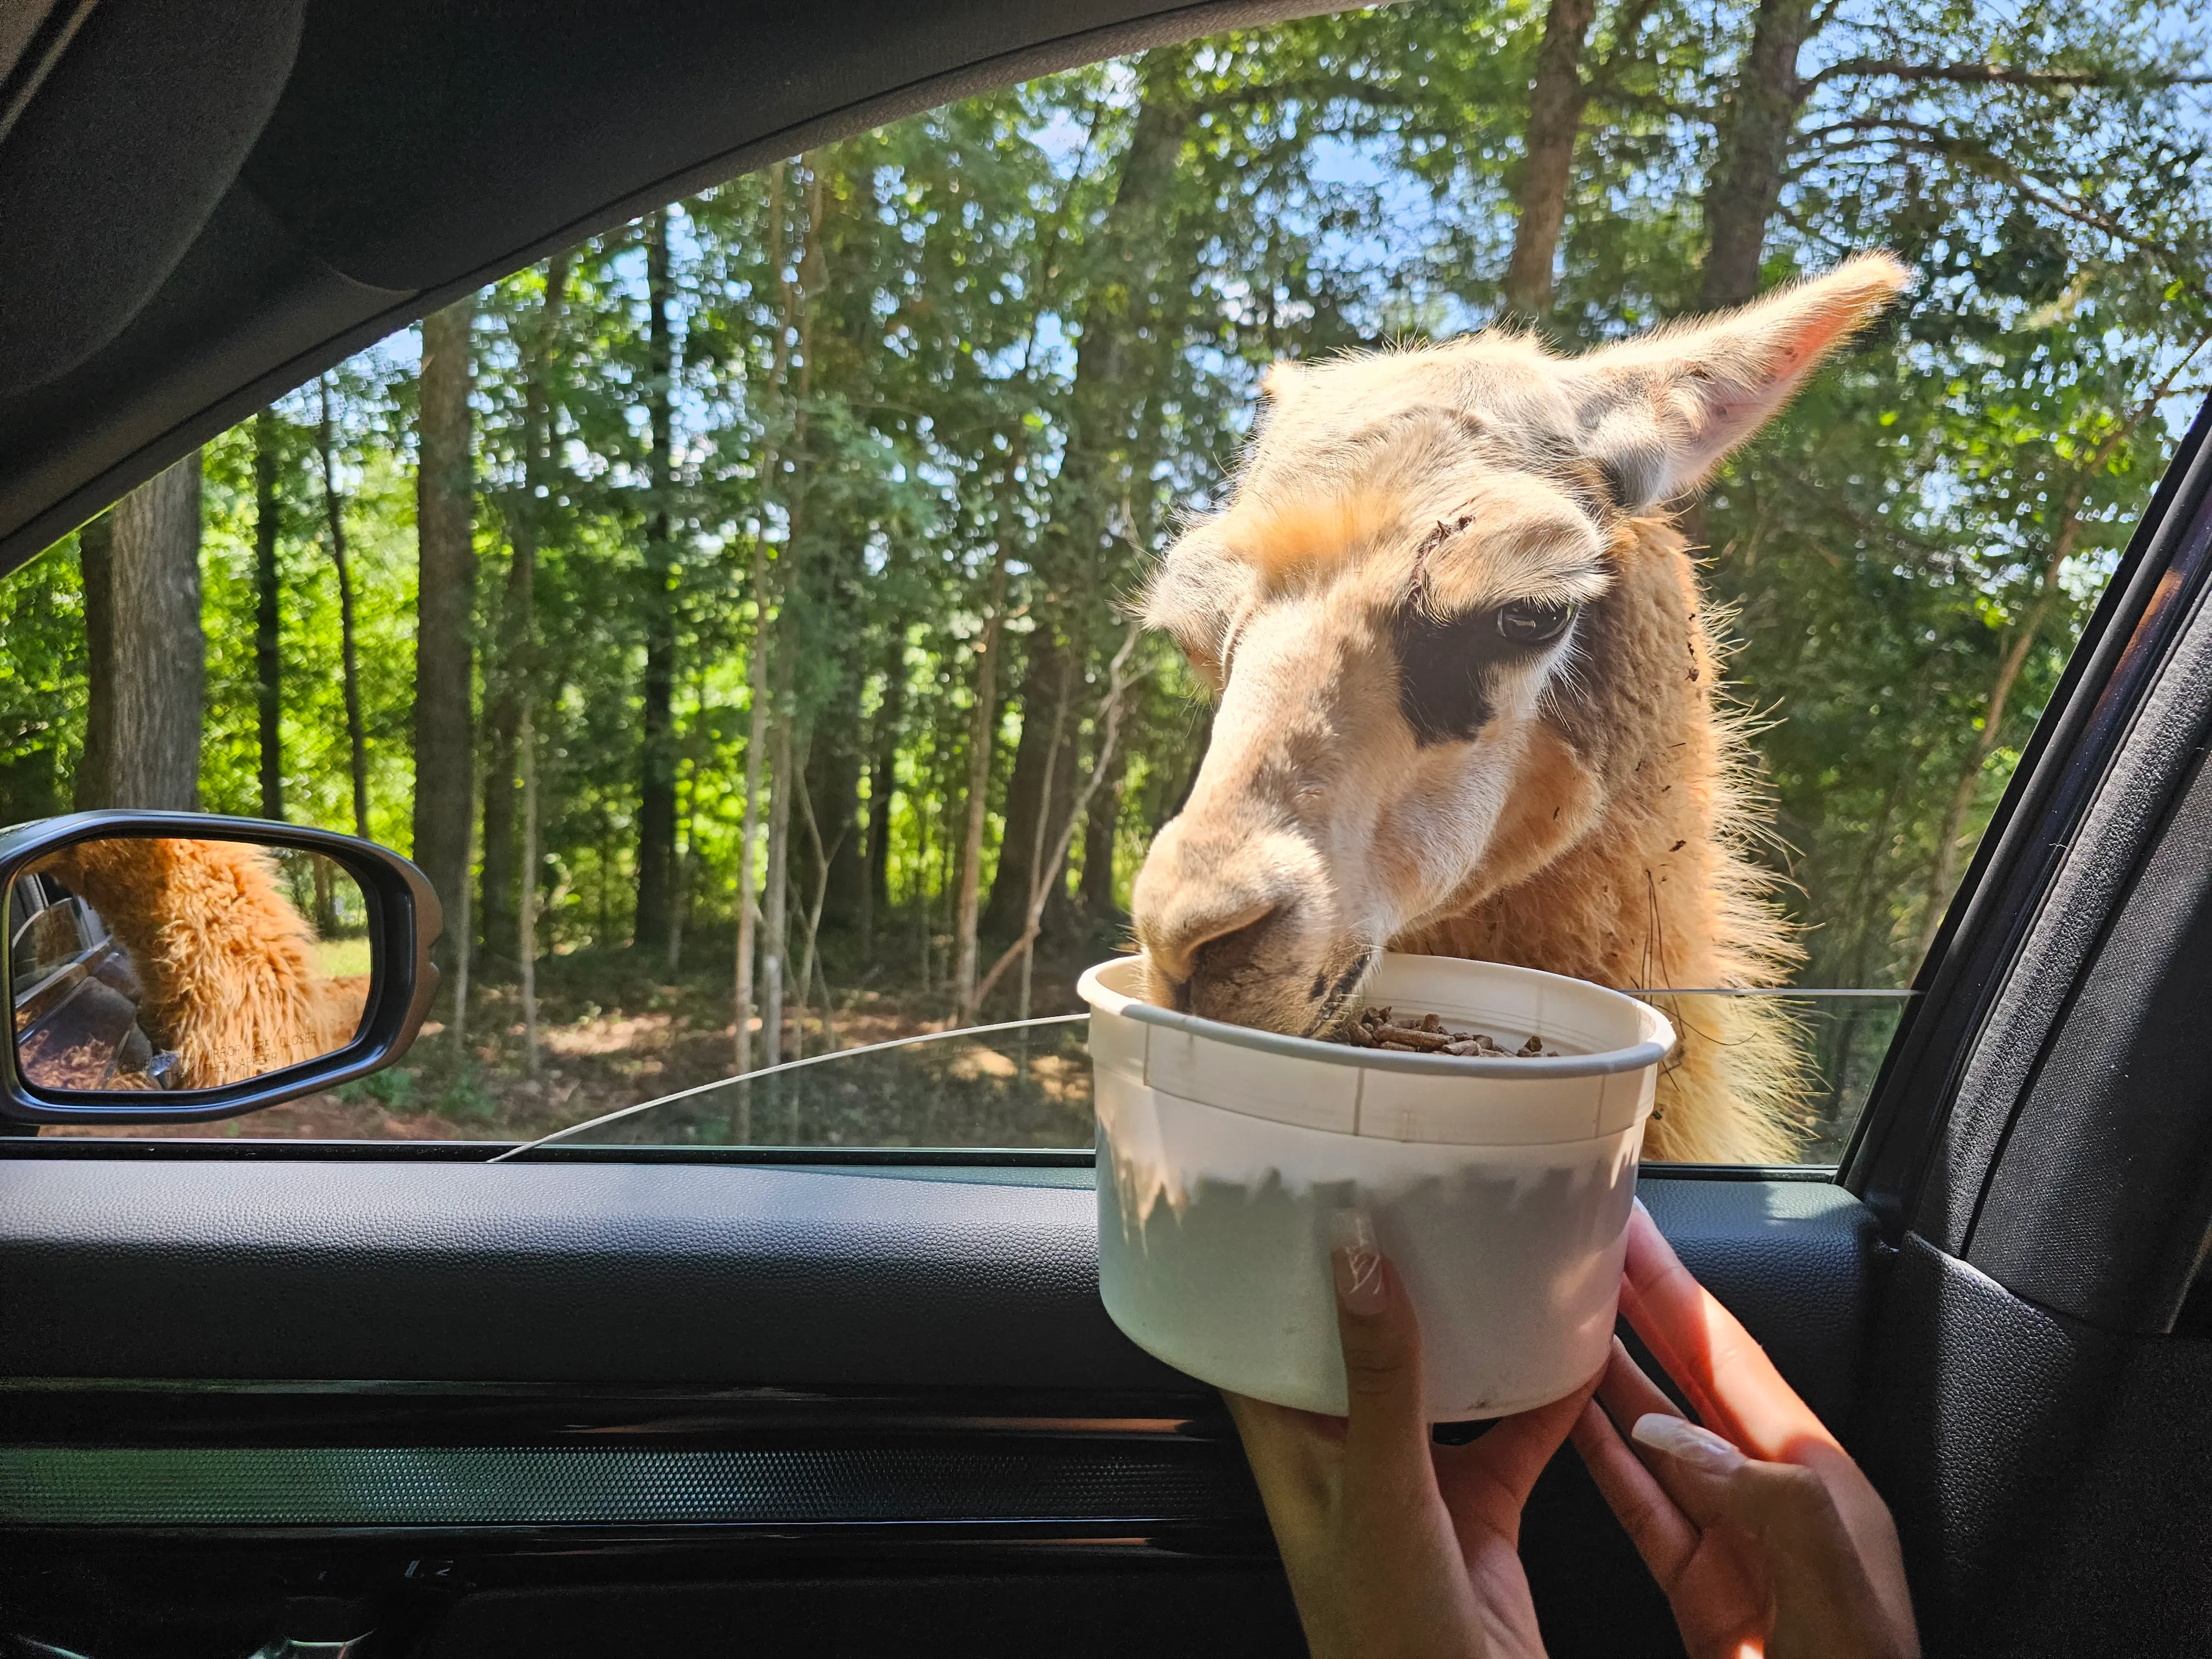 Atlanta Safari Park Llama Feeding from Car